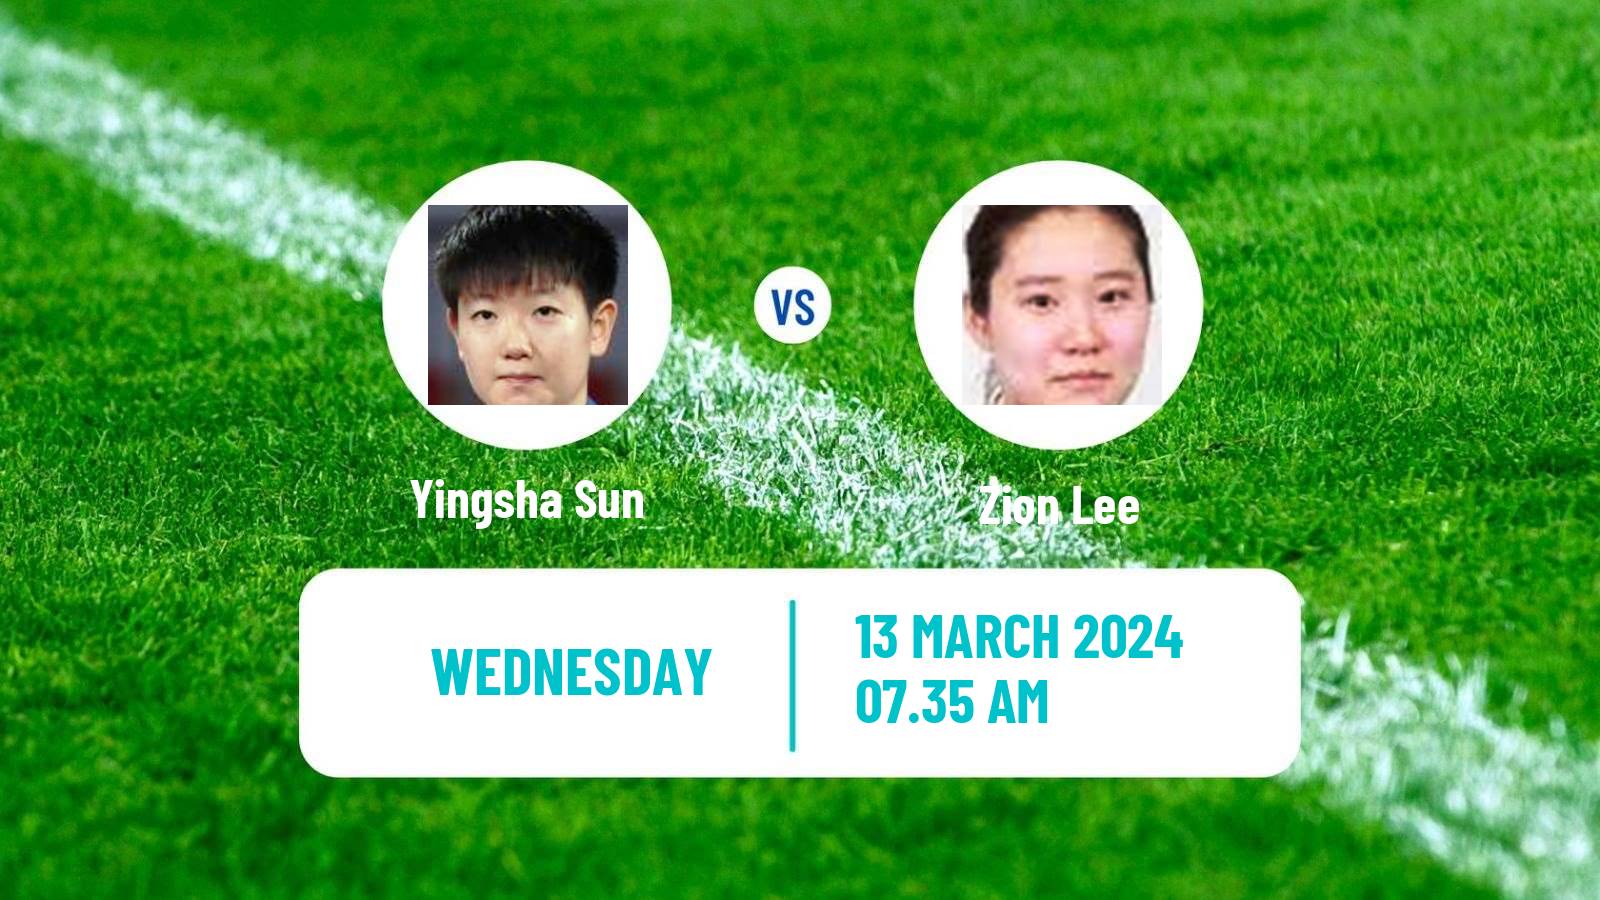 Table tennis Singapore Smash Women Yingsha Sun - Zion Lee